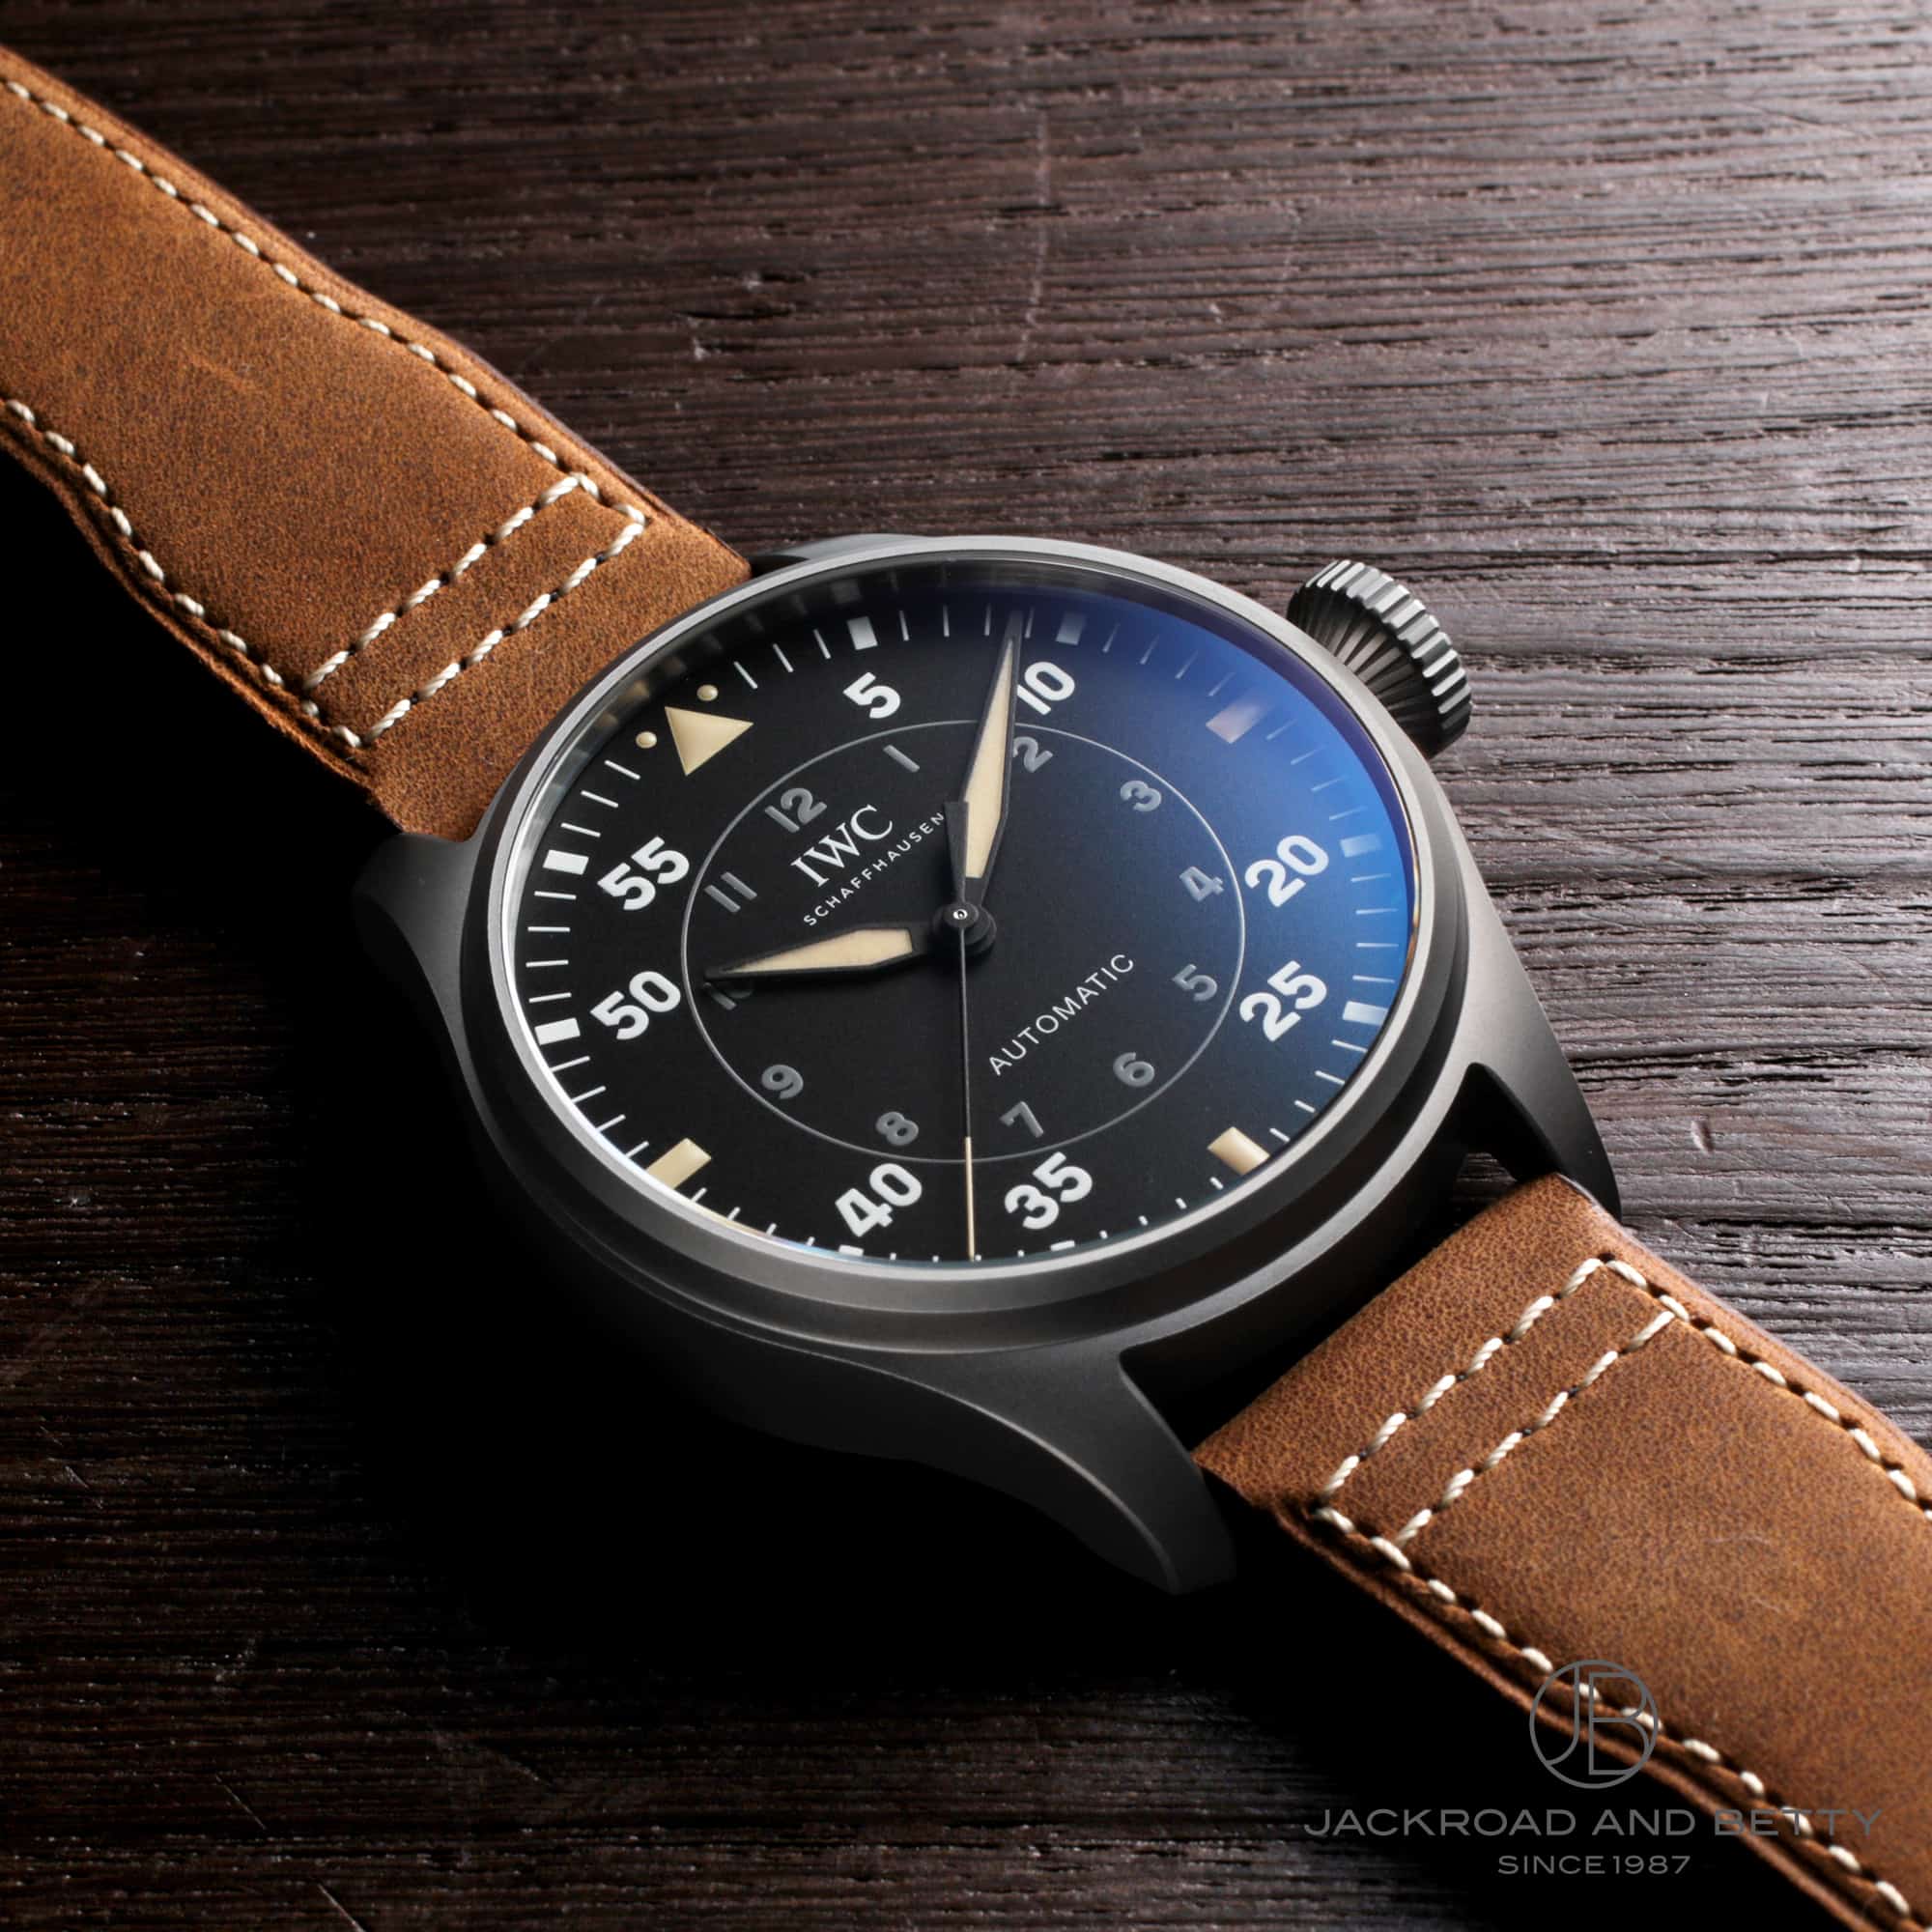 インターナショナルウォッチカンパニー IWC IW329701 ブラック メンズ 腕時計